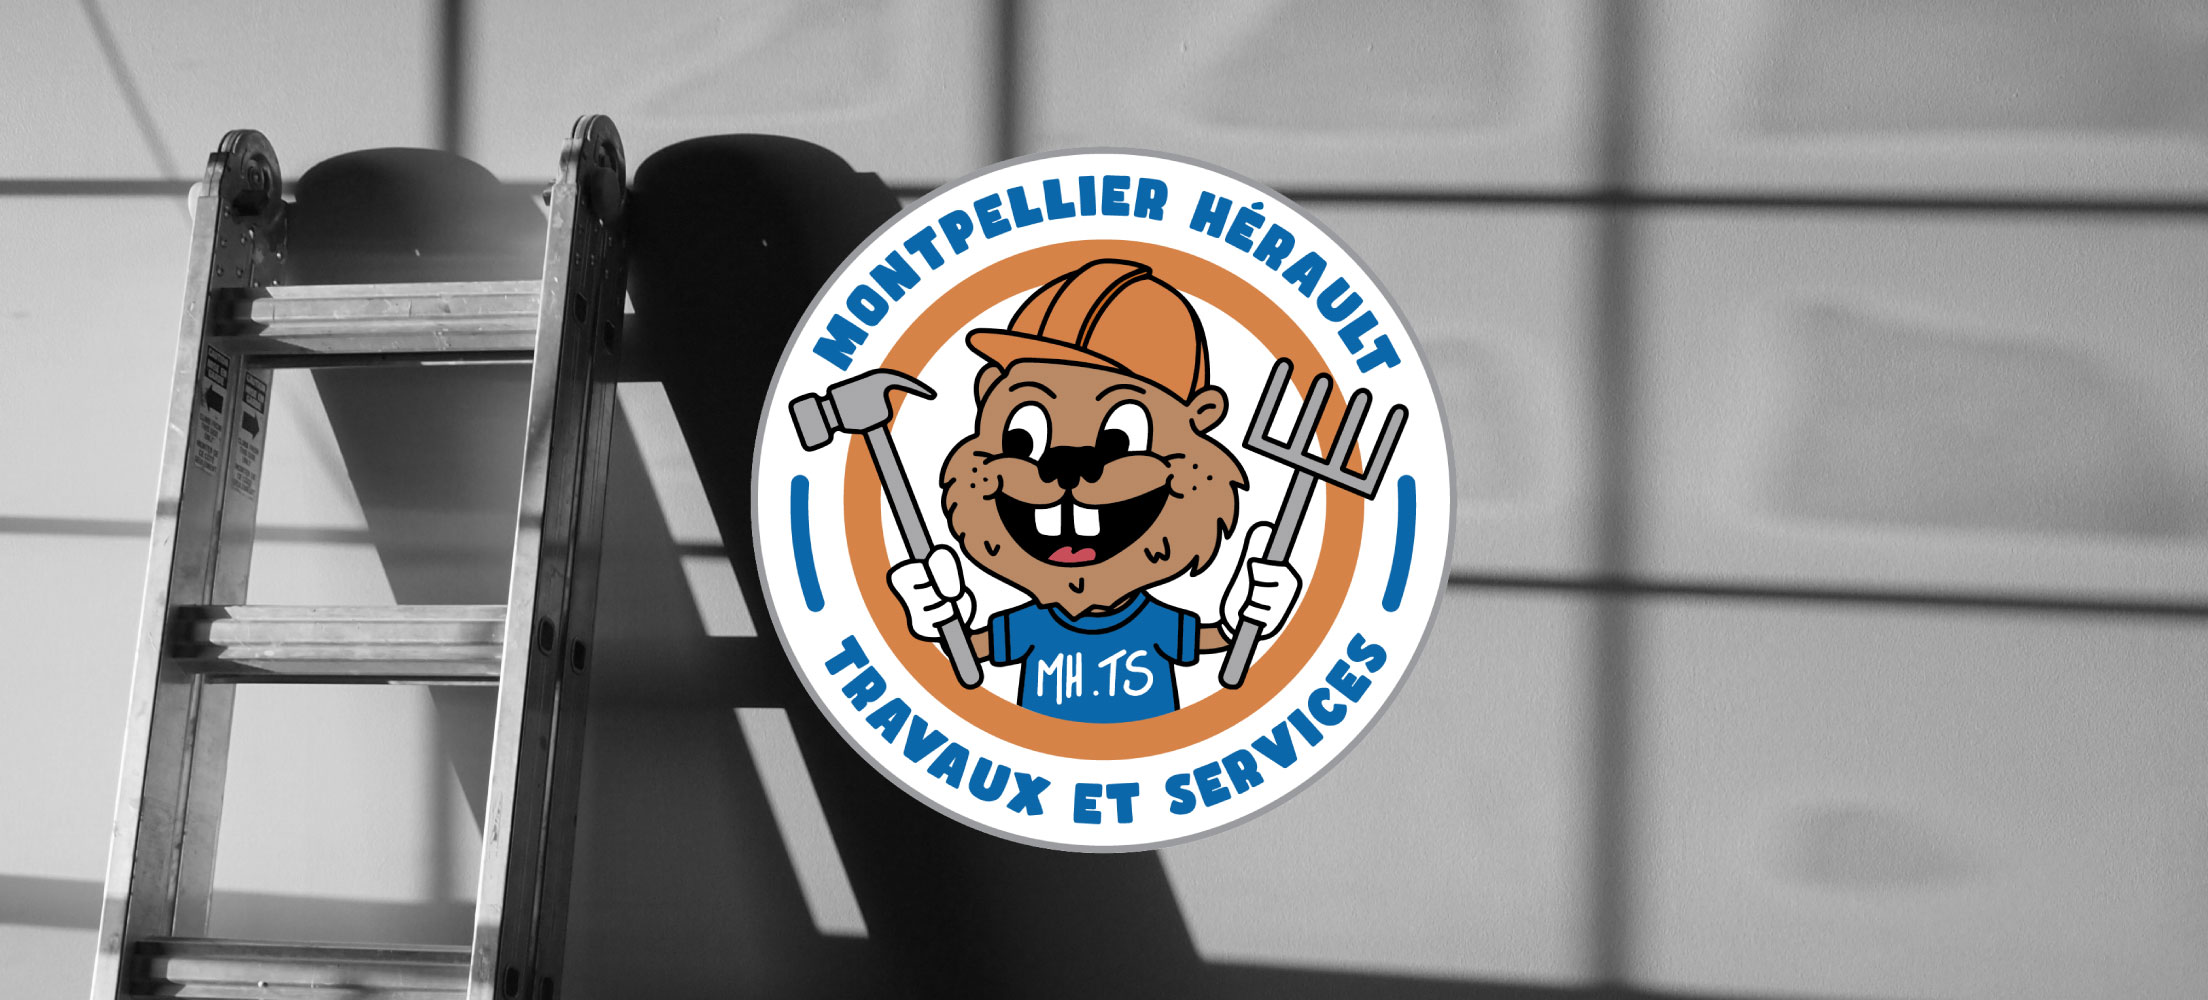 Logo Montpellier Hérault travaux et services